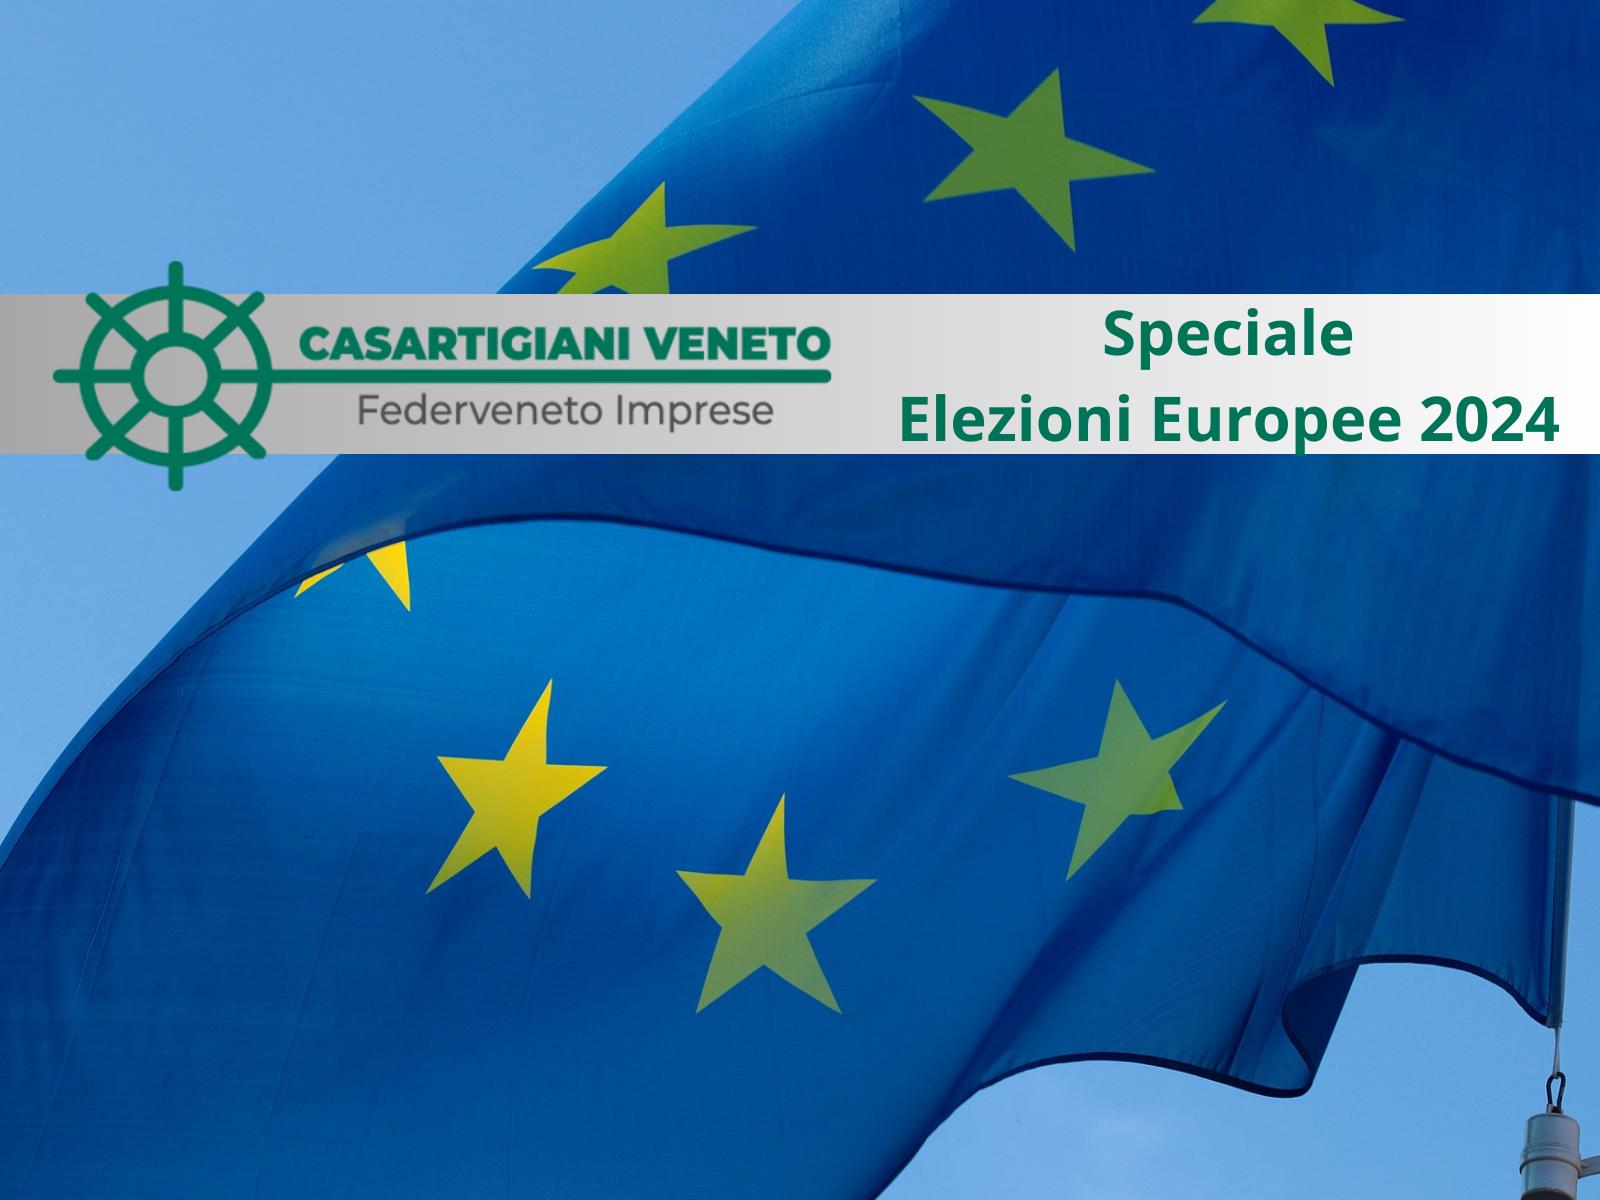 Speciale Elezioni Europee 2024: le proposte di Casartigiani